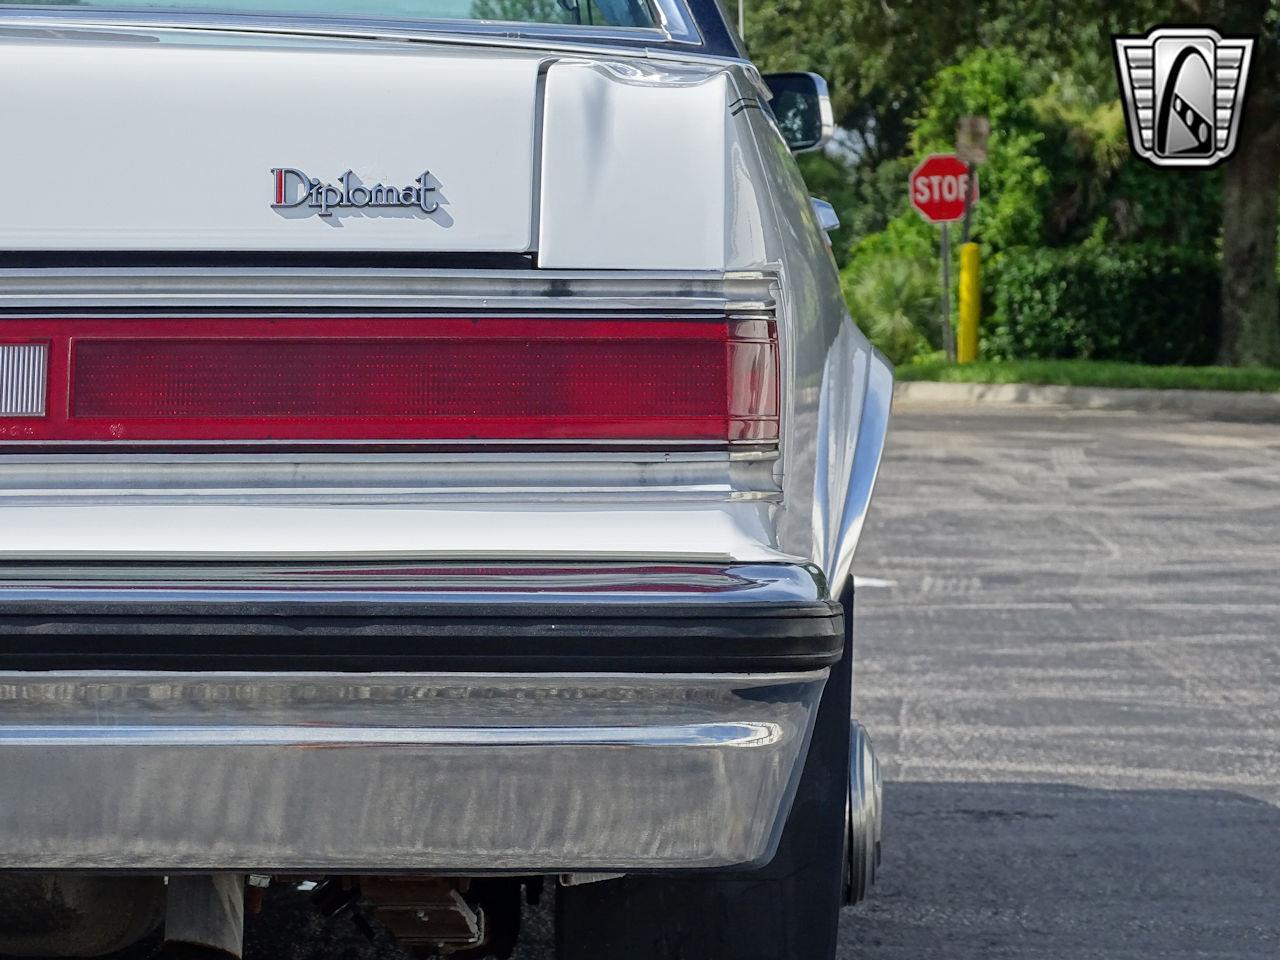 1984 Dodge Diplomat for sale in O'Fallon, IL – photo 52